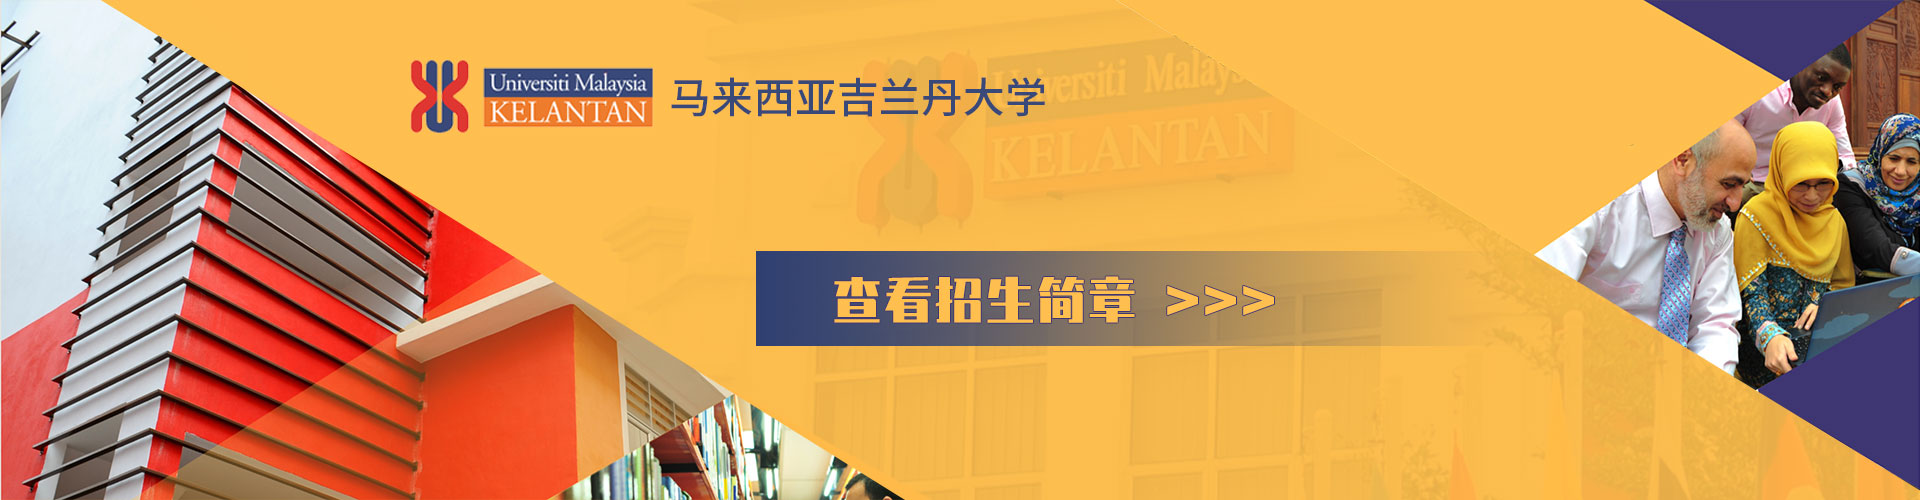 馬來西亞吉蘭丹大學招生簡章